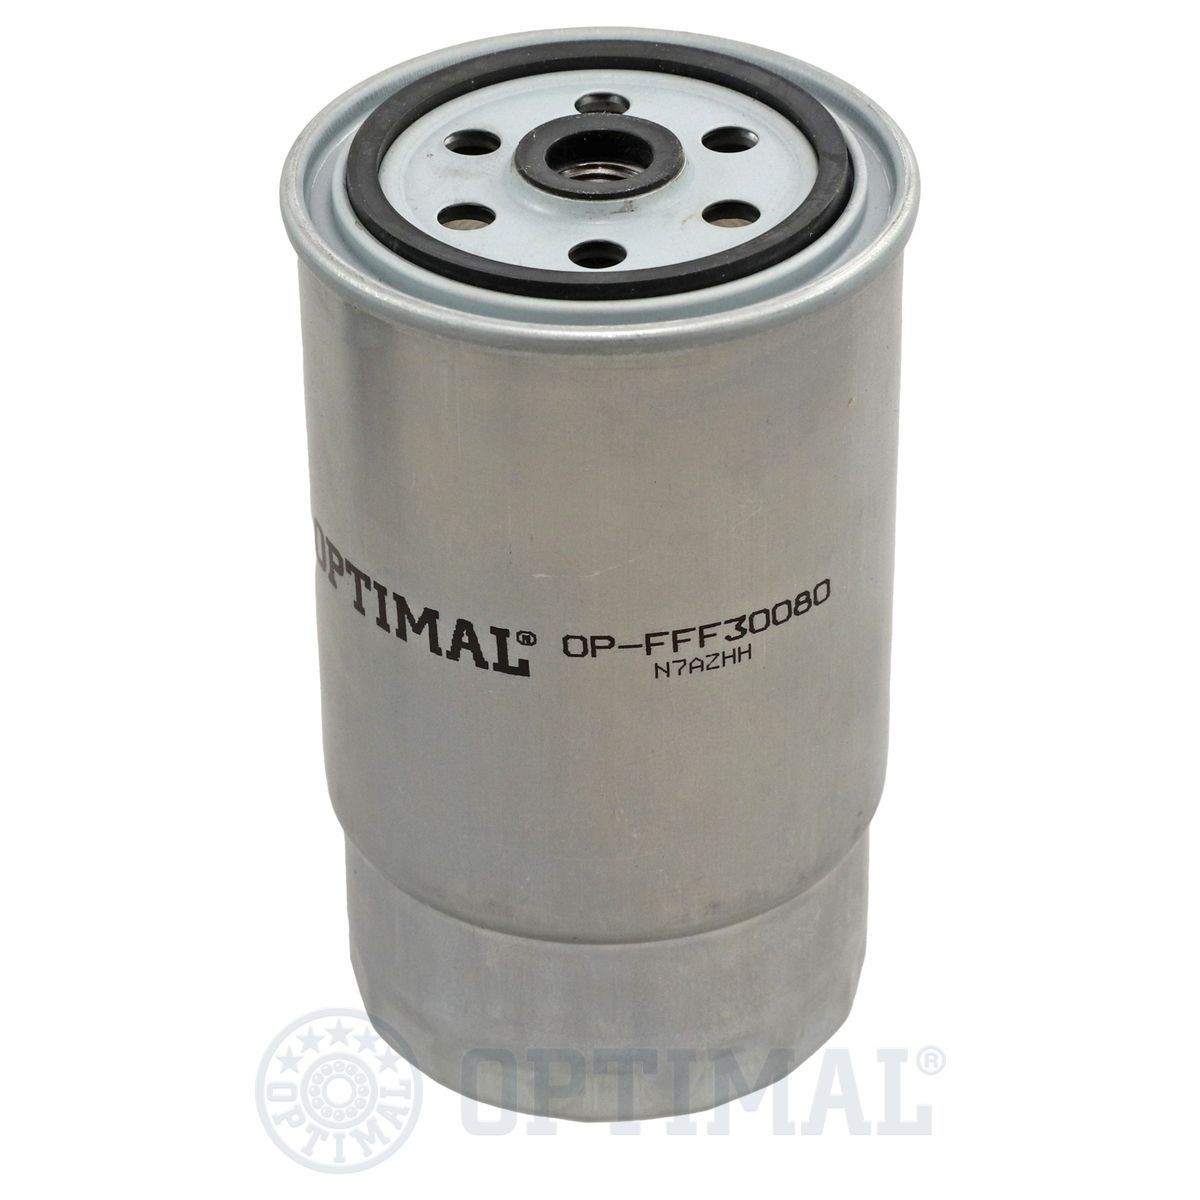 OPTIMAL OP-FFF30080 Fuel filter 77362338